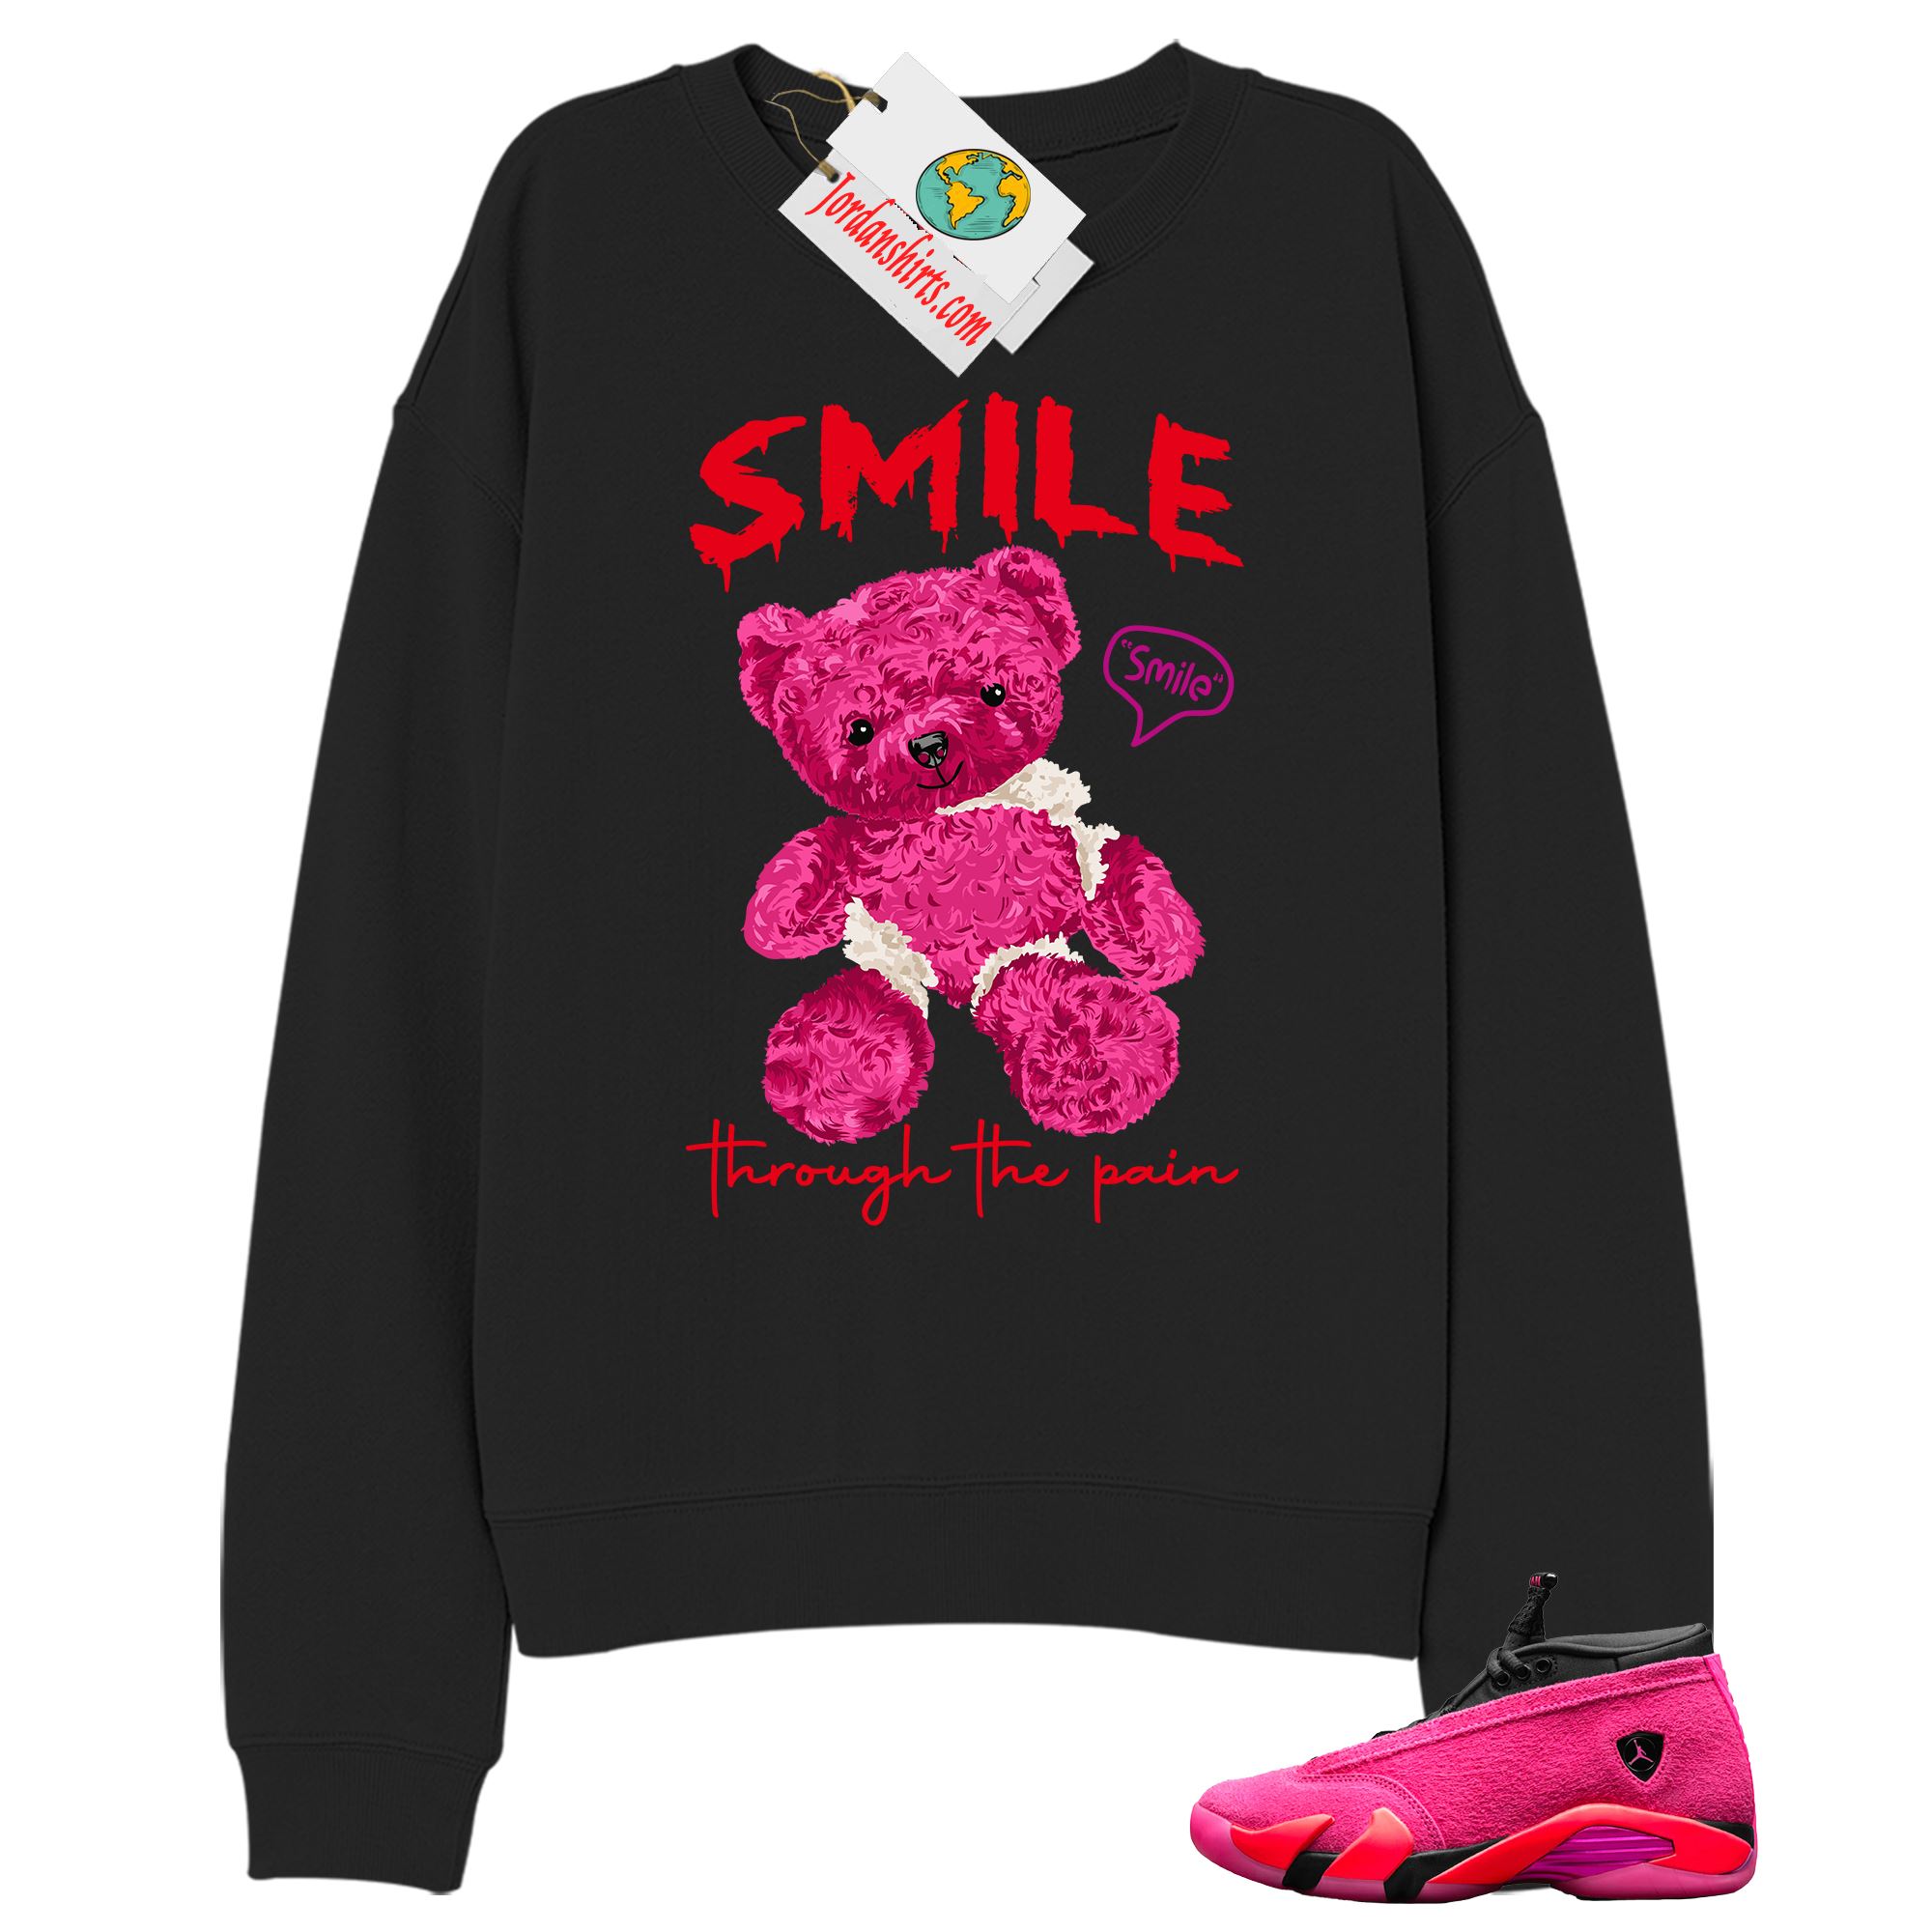 Jordan 14 Sweatshirt, Teddy Bear Smile Pain Black Sweatshirt Air Jordan 14 Wmns Shocking Pink 14s Full Size Up To 5xl